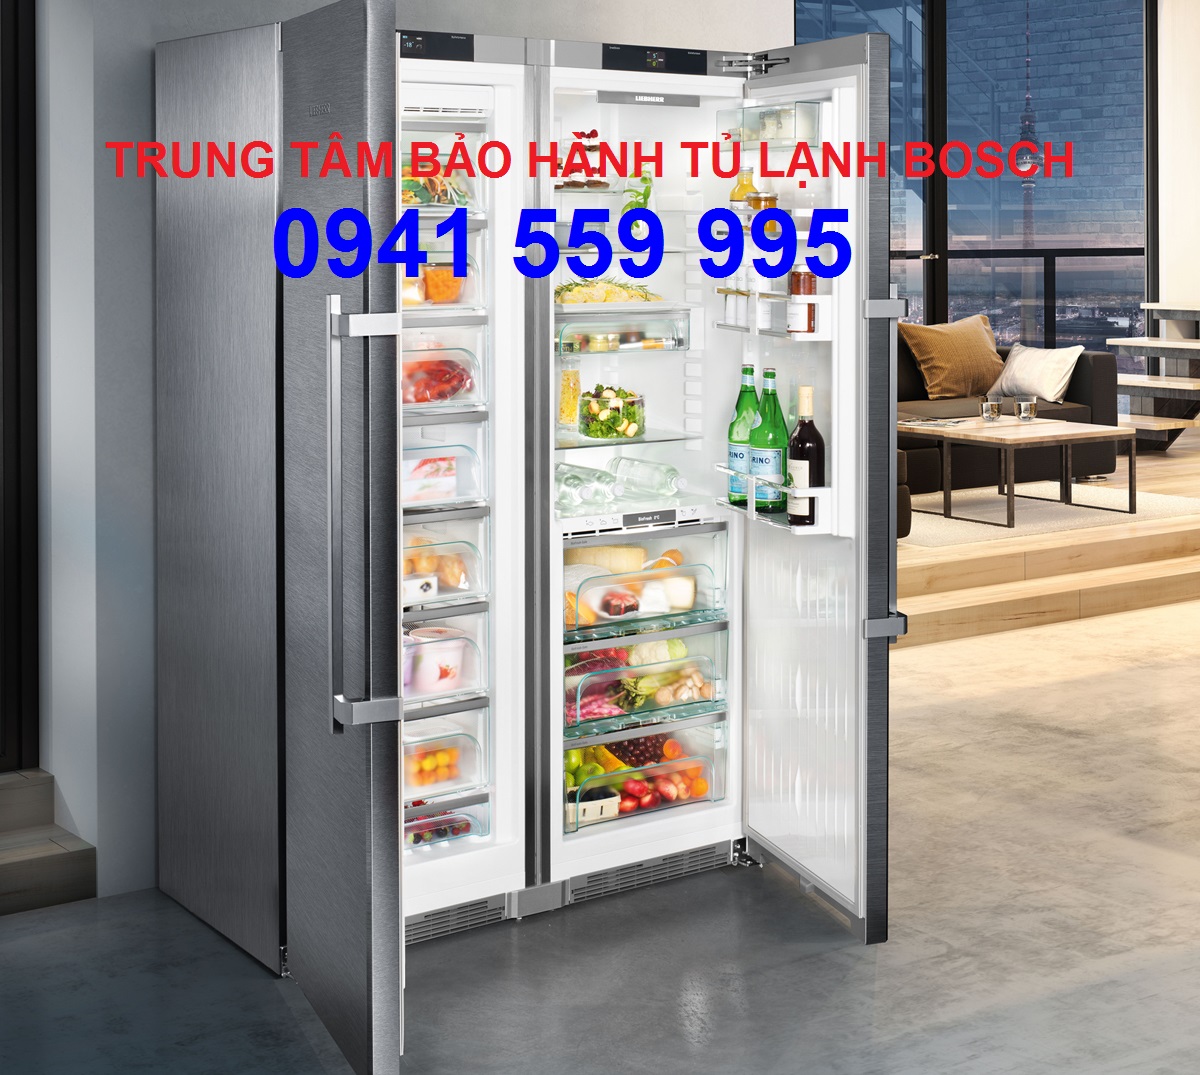 Bảo Hành Tủ Lạnh Bosch Tốt Nhất Tại Hà Nội 0941 559 995